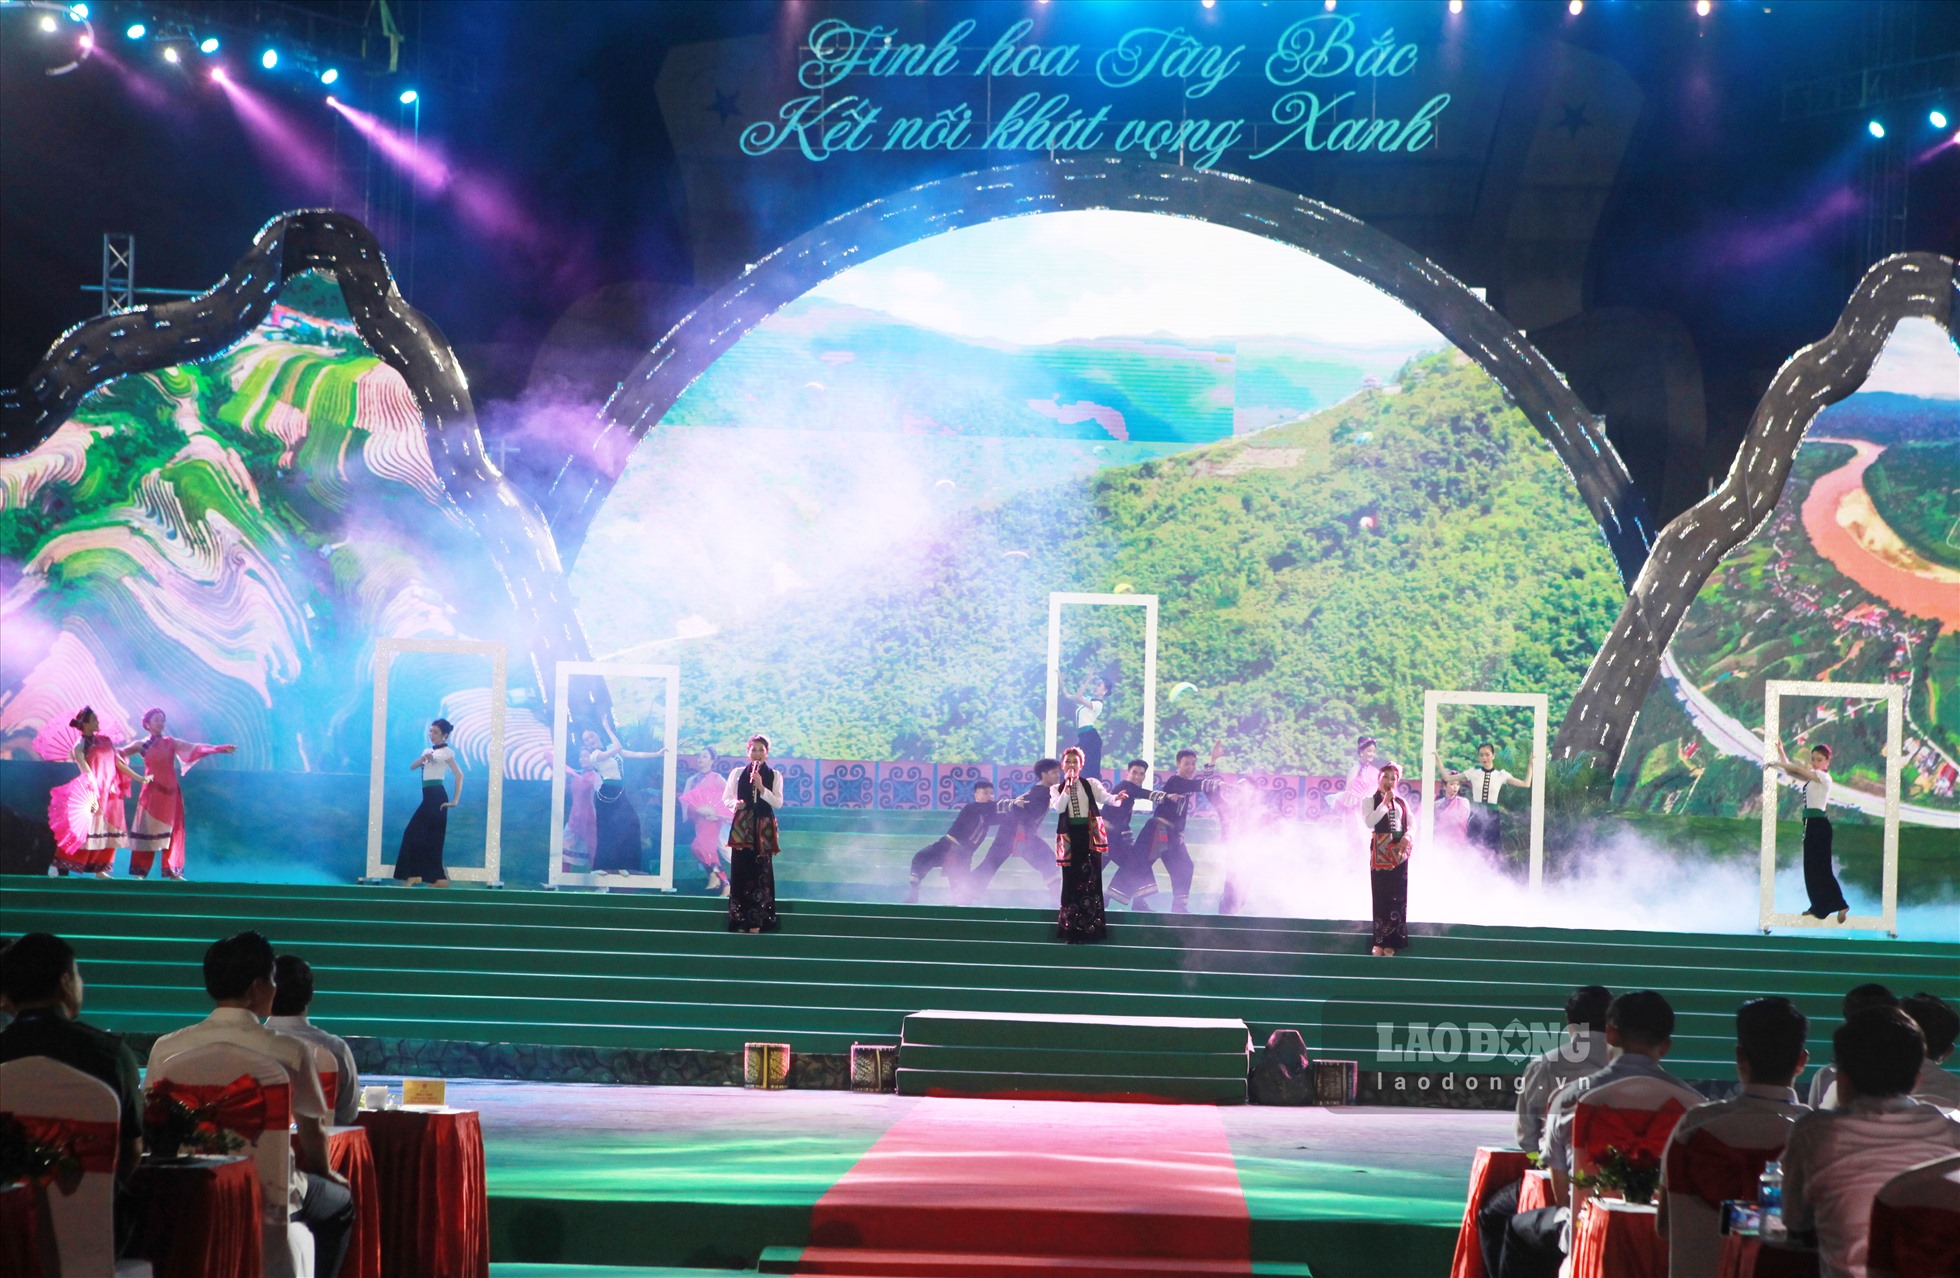 Chương trình Festival với sự tham gia của 8 tỉnh Tây Bắc mở rộng và TP.Hồ Chí Minh đã thu hút hàng trăm ngàn người đến tham dự.